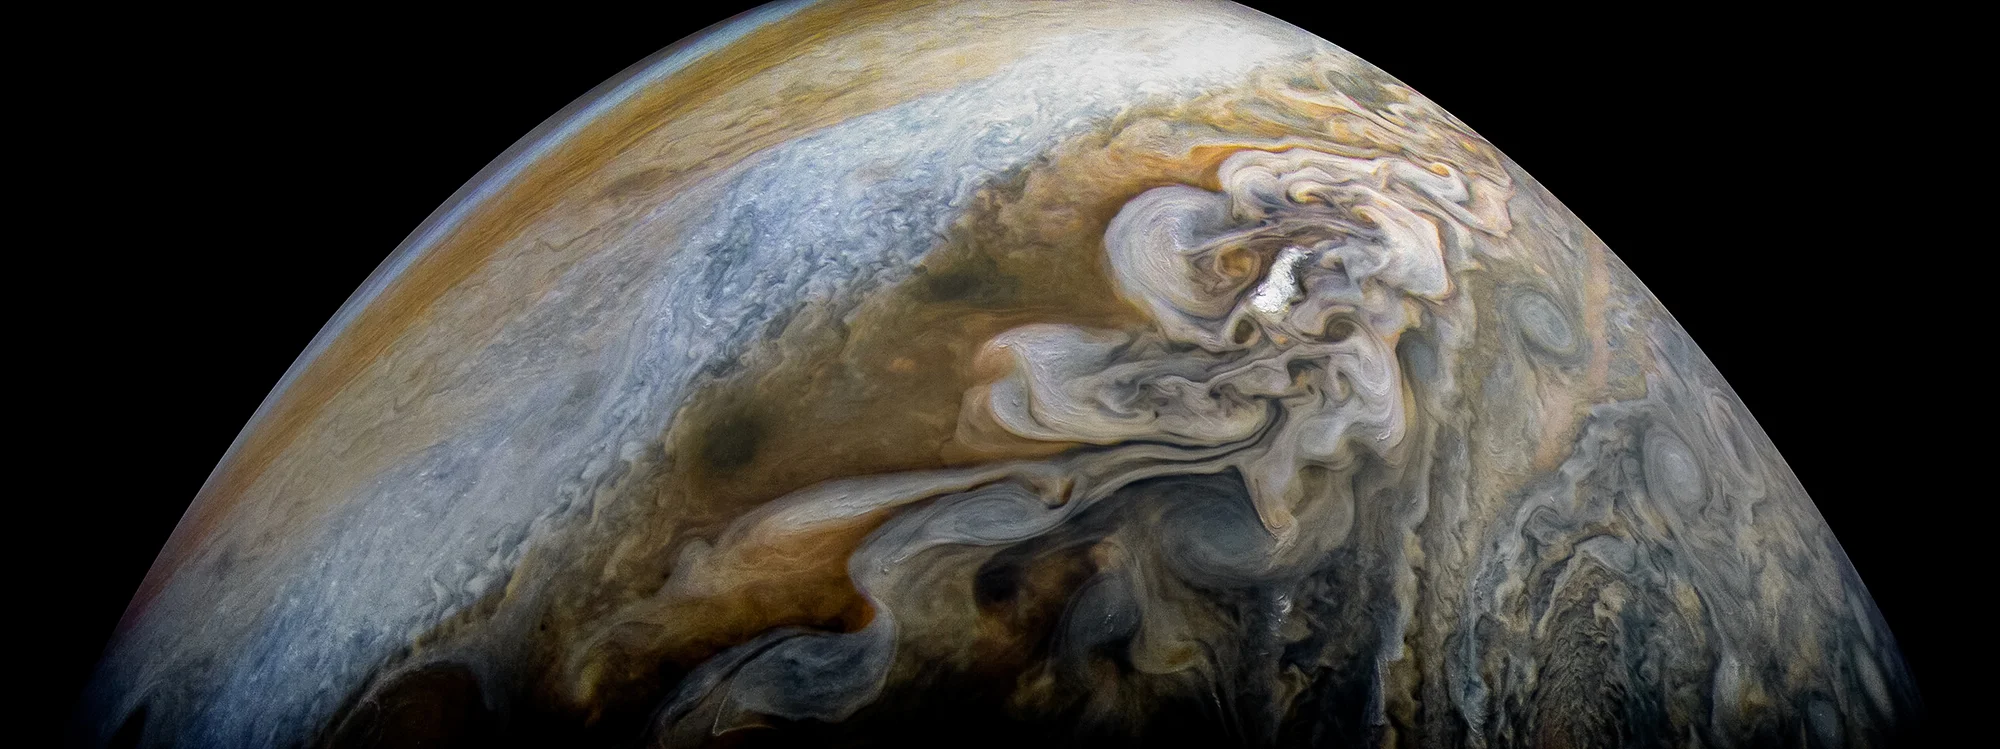 NASA показало дивовижний знімок хмар на Юпітері, і тепер усі мріють про космос - фото 370203